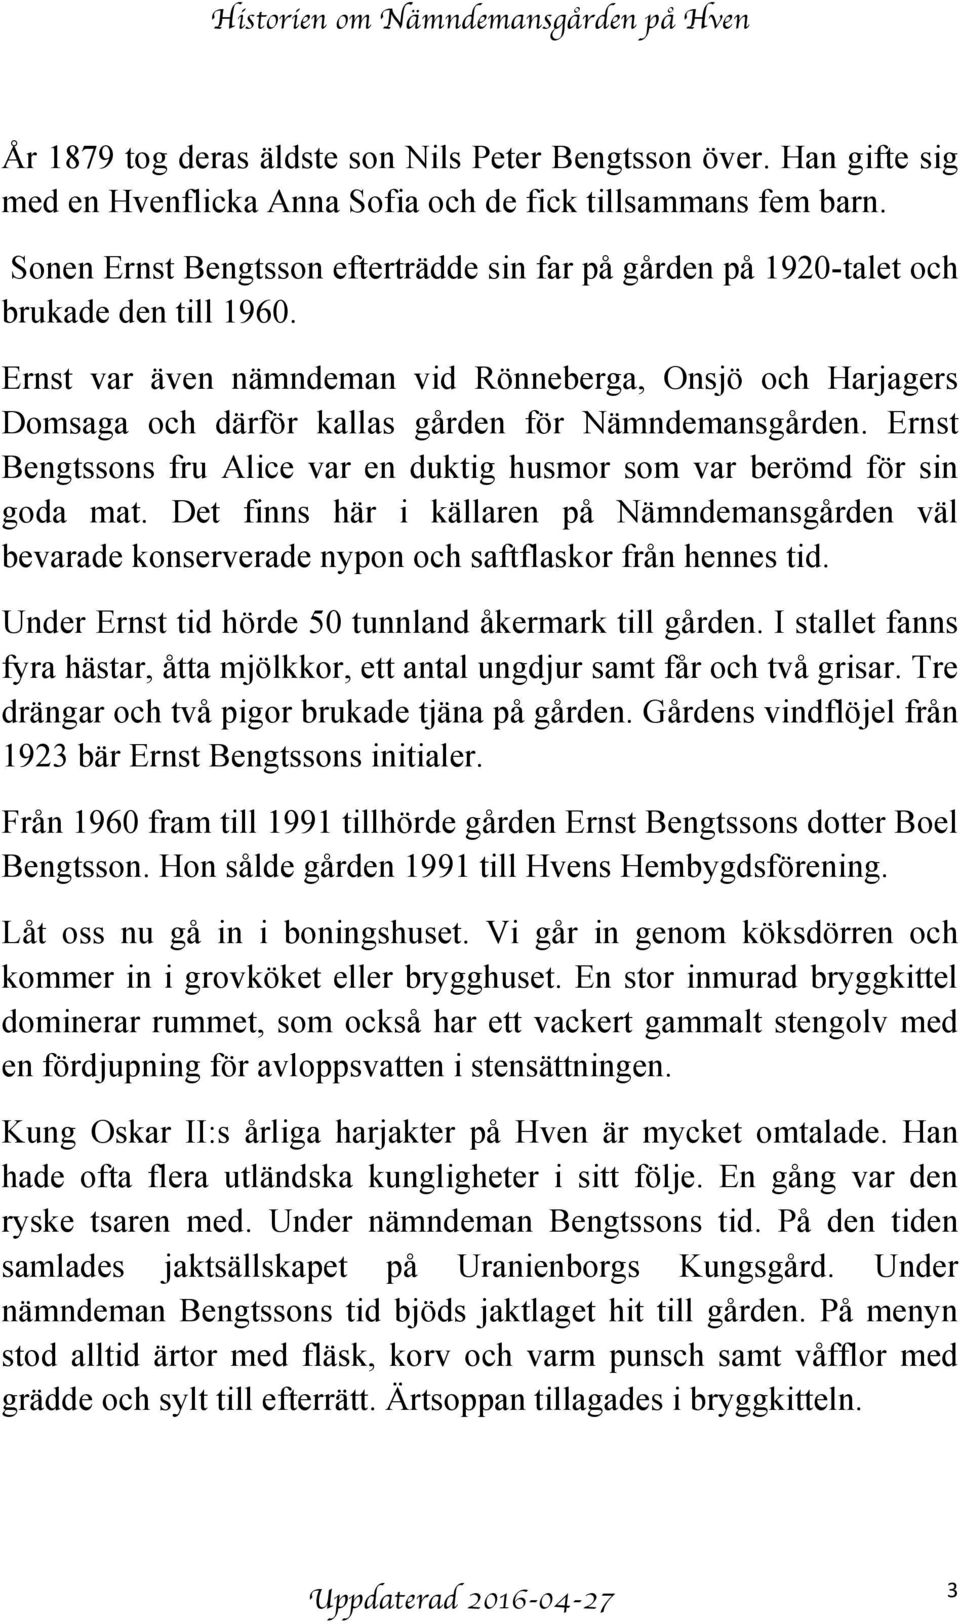 Ernst var även nämndeman vid Rönneberga, Onsjö och Harjagers Domsaga och därför kallas gården för Nämndemansgården. Ernst Bengtssons fru Alice var en duktig husmor som var berömd för sin goda mat.